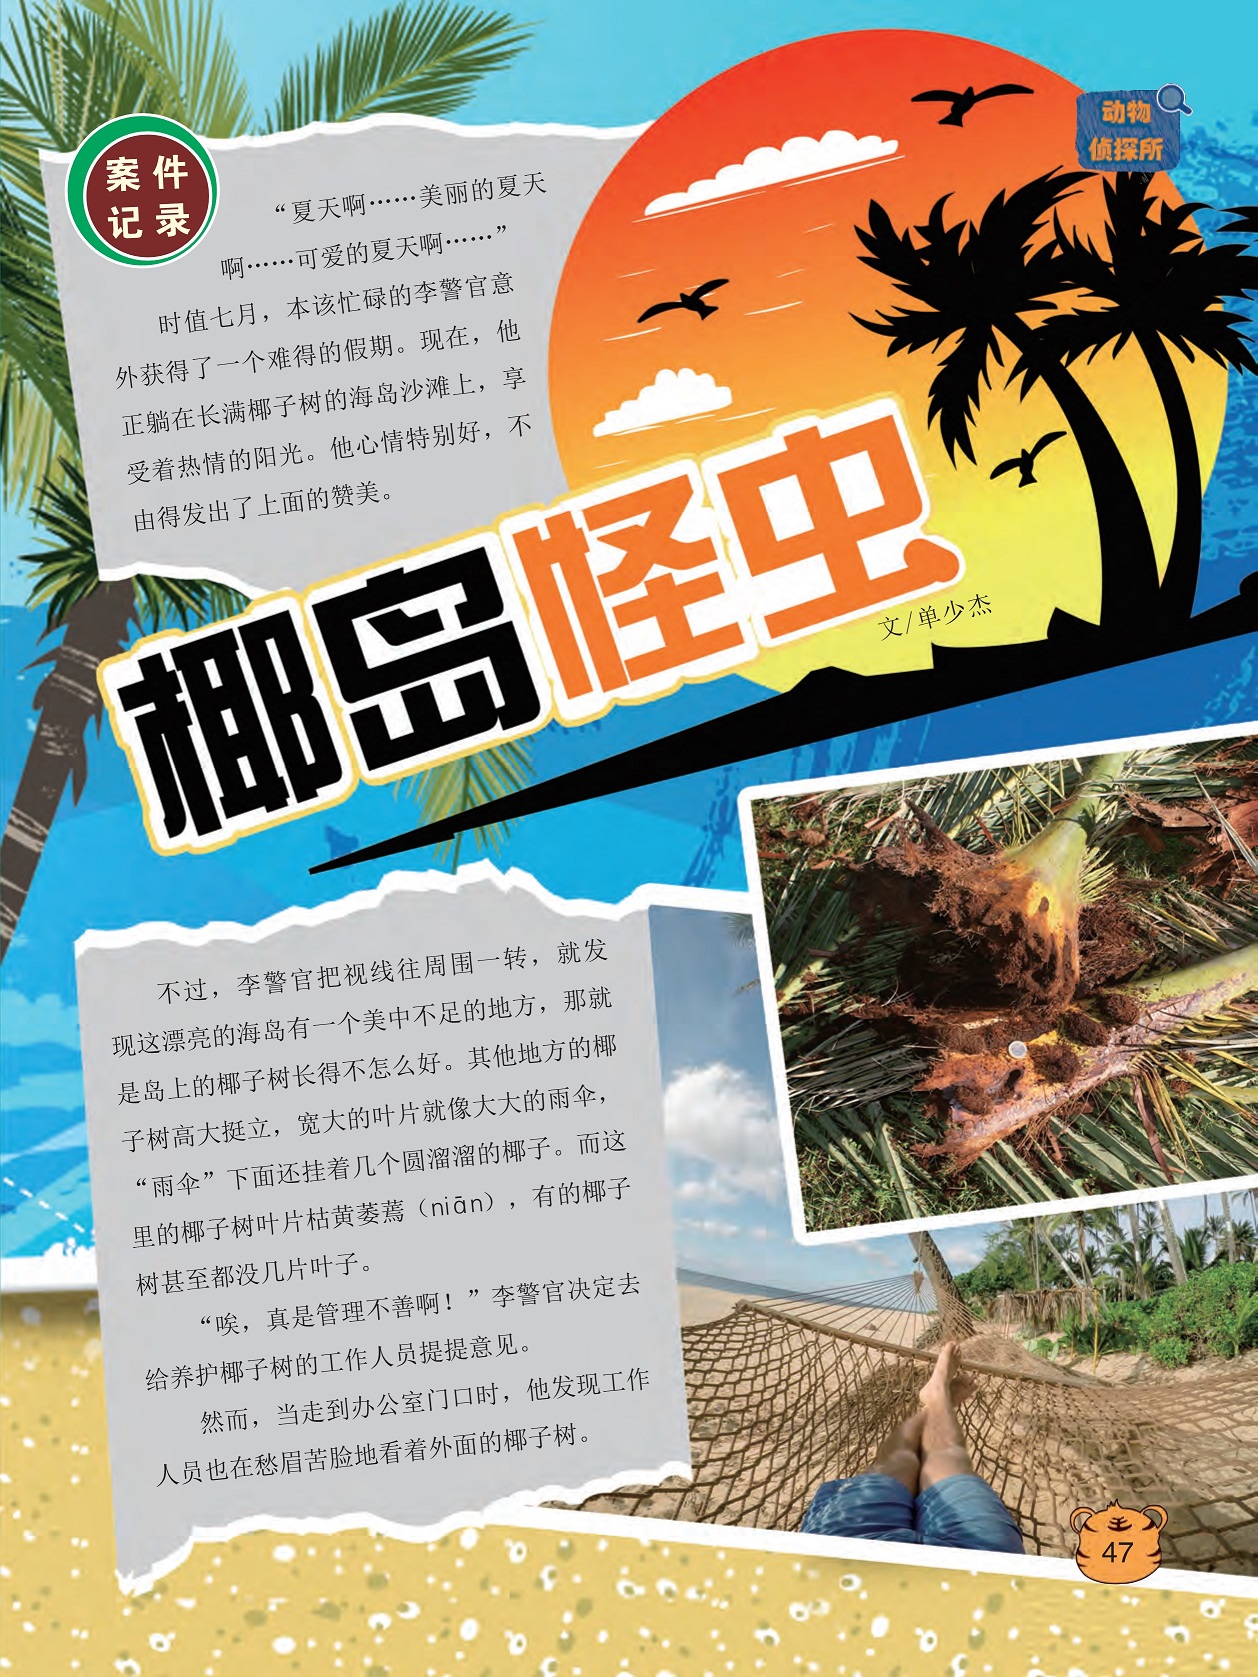 李警官获得了一个难得的假期,岛上的椰子树长得不怎么好